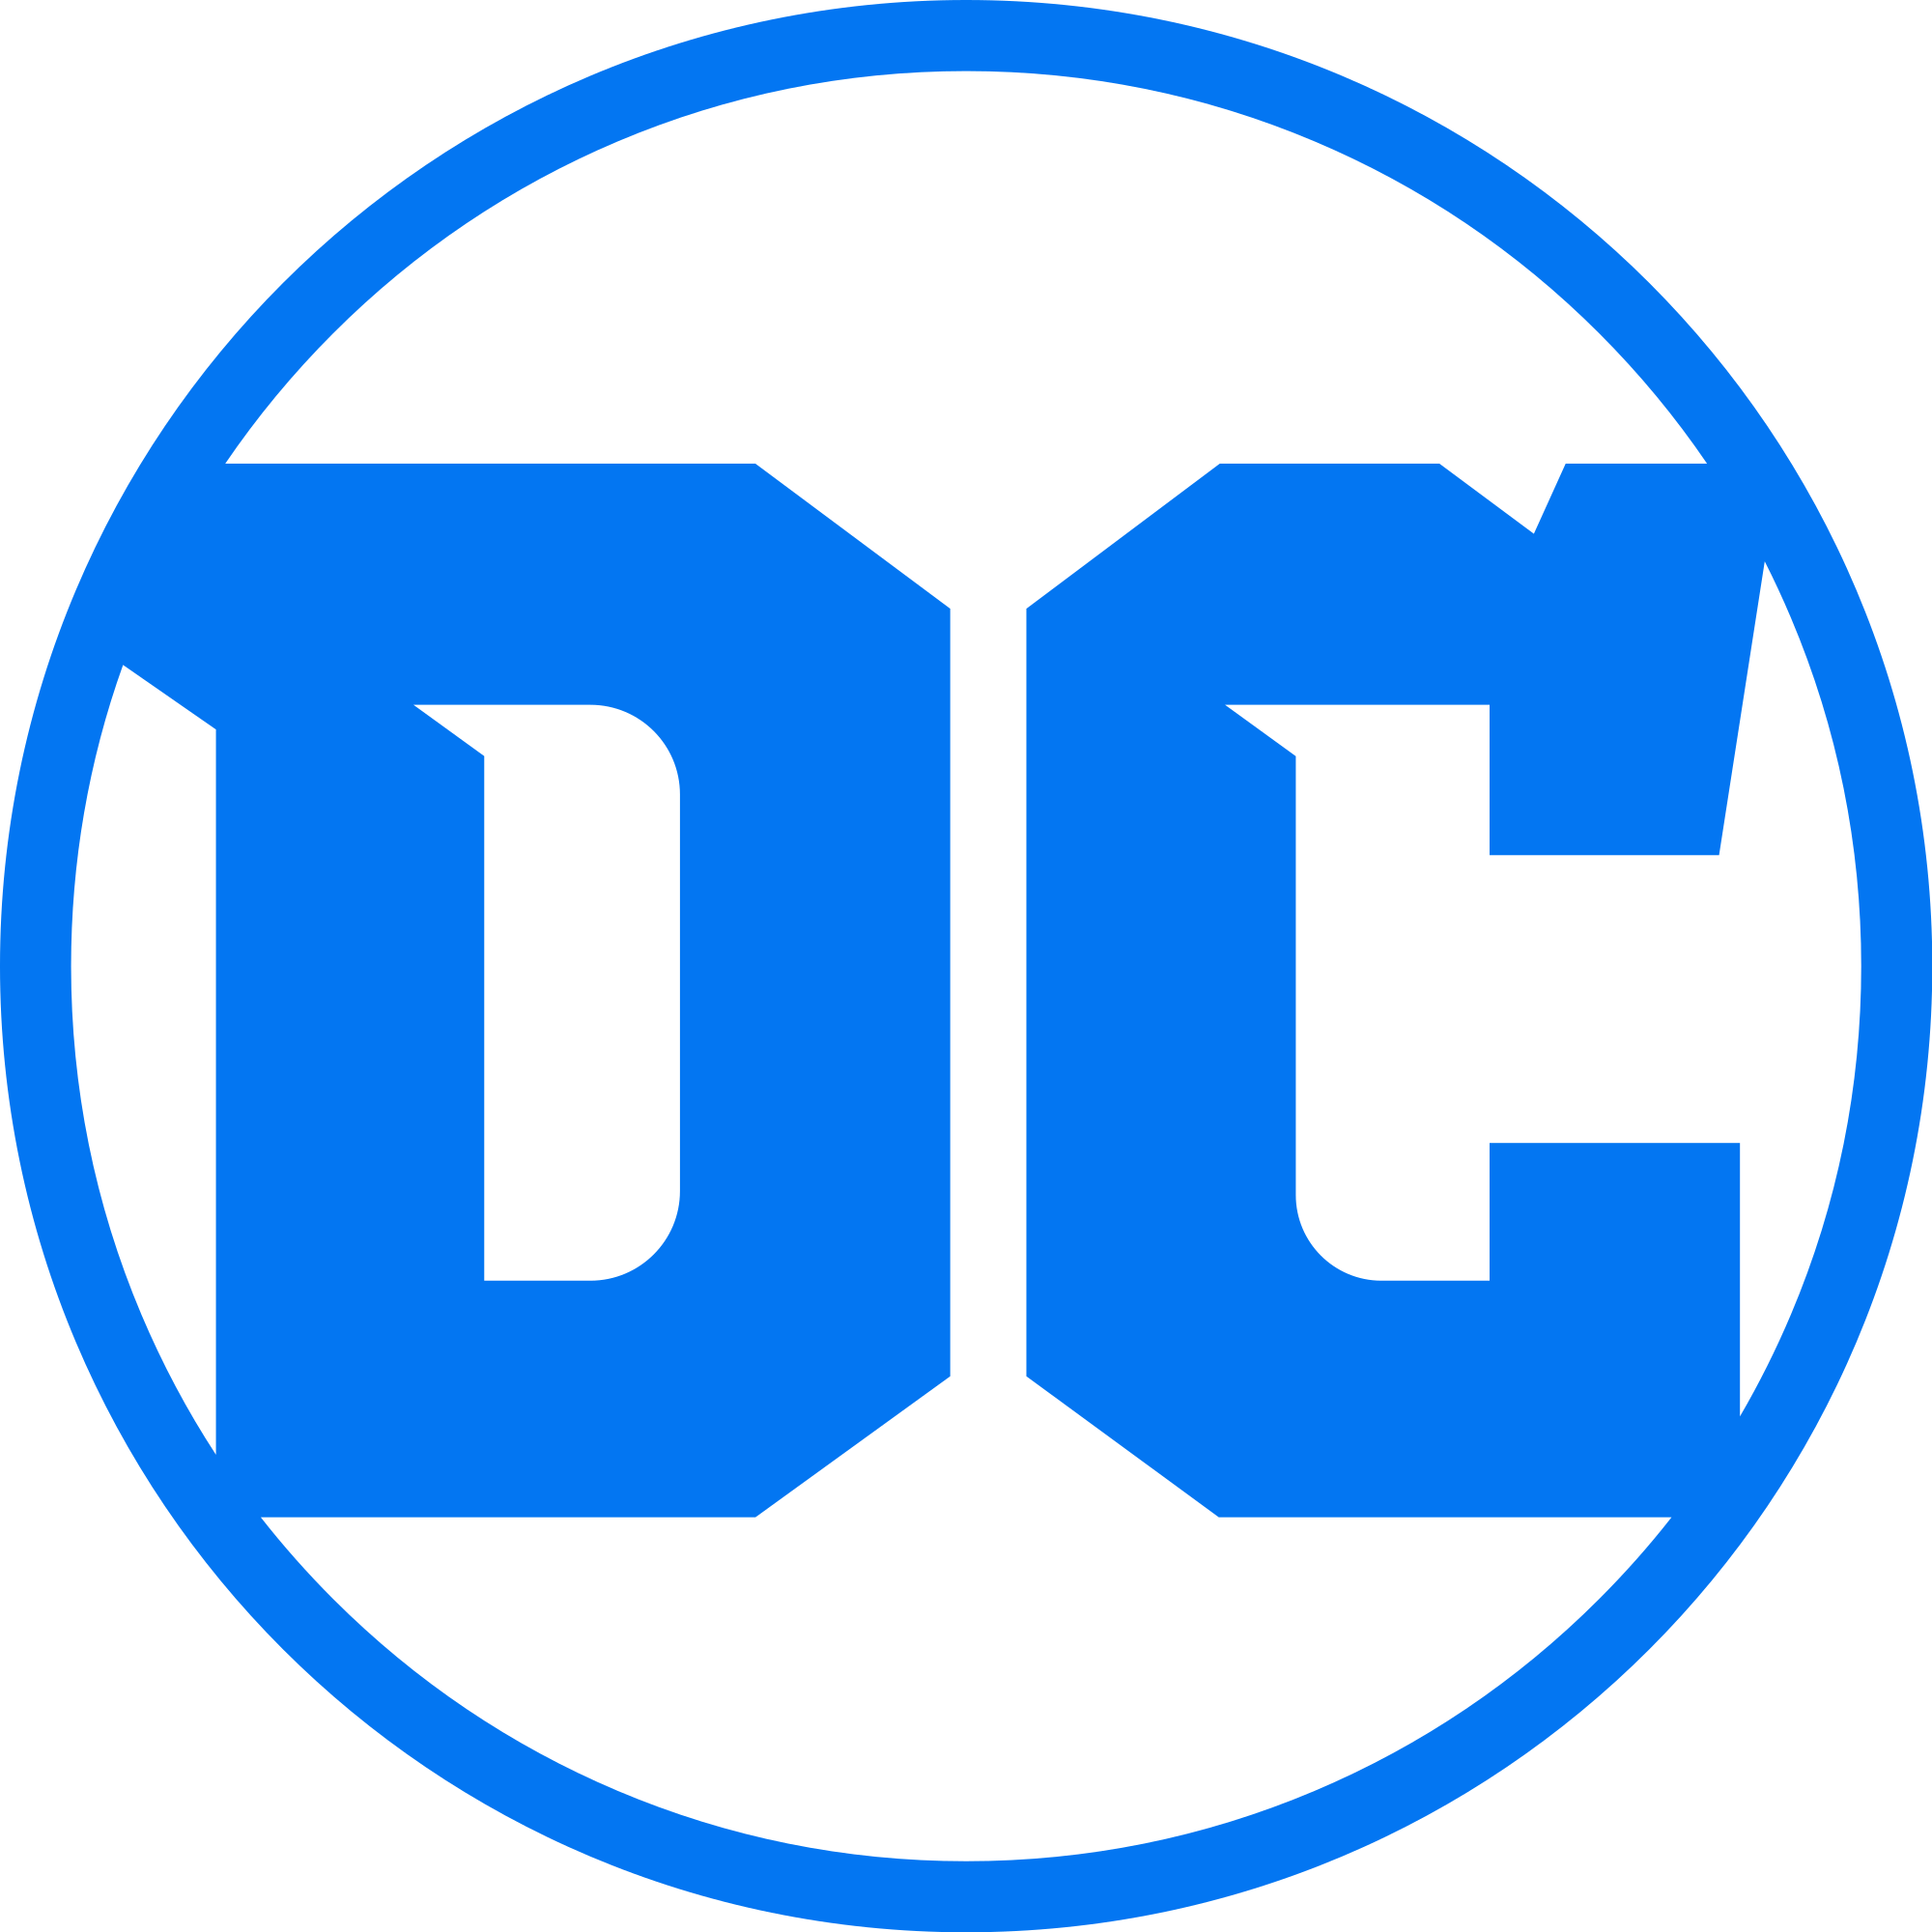 Logo Dc Comics Png - Open Hdpng.com , Transparent background PNG HD thumbnail